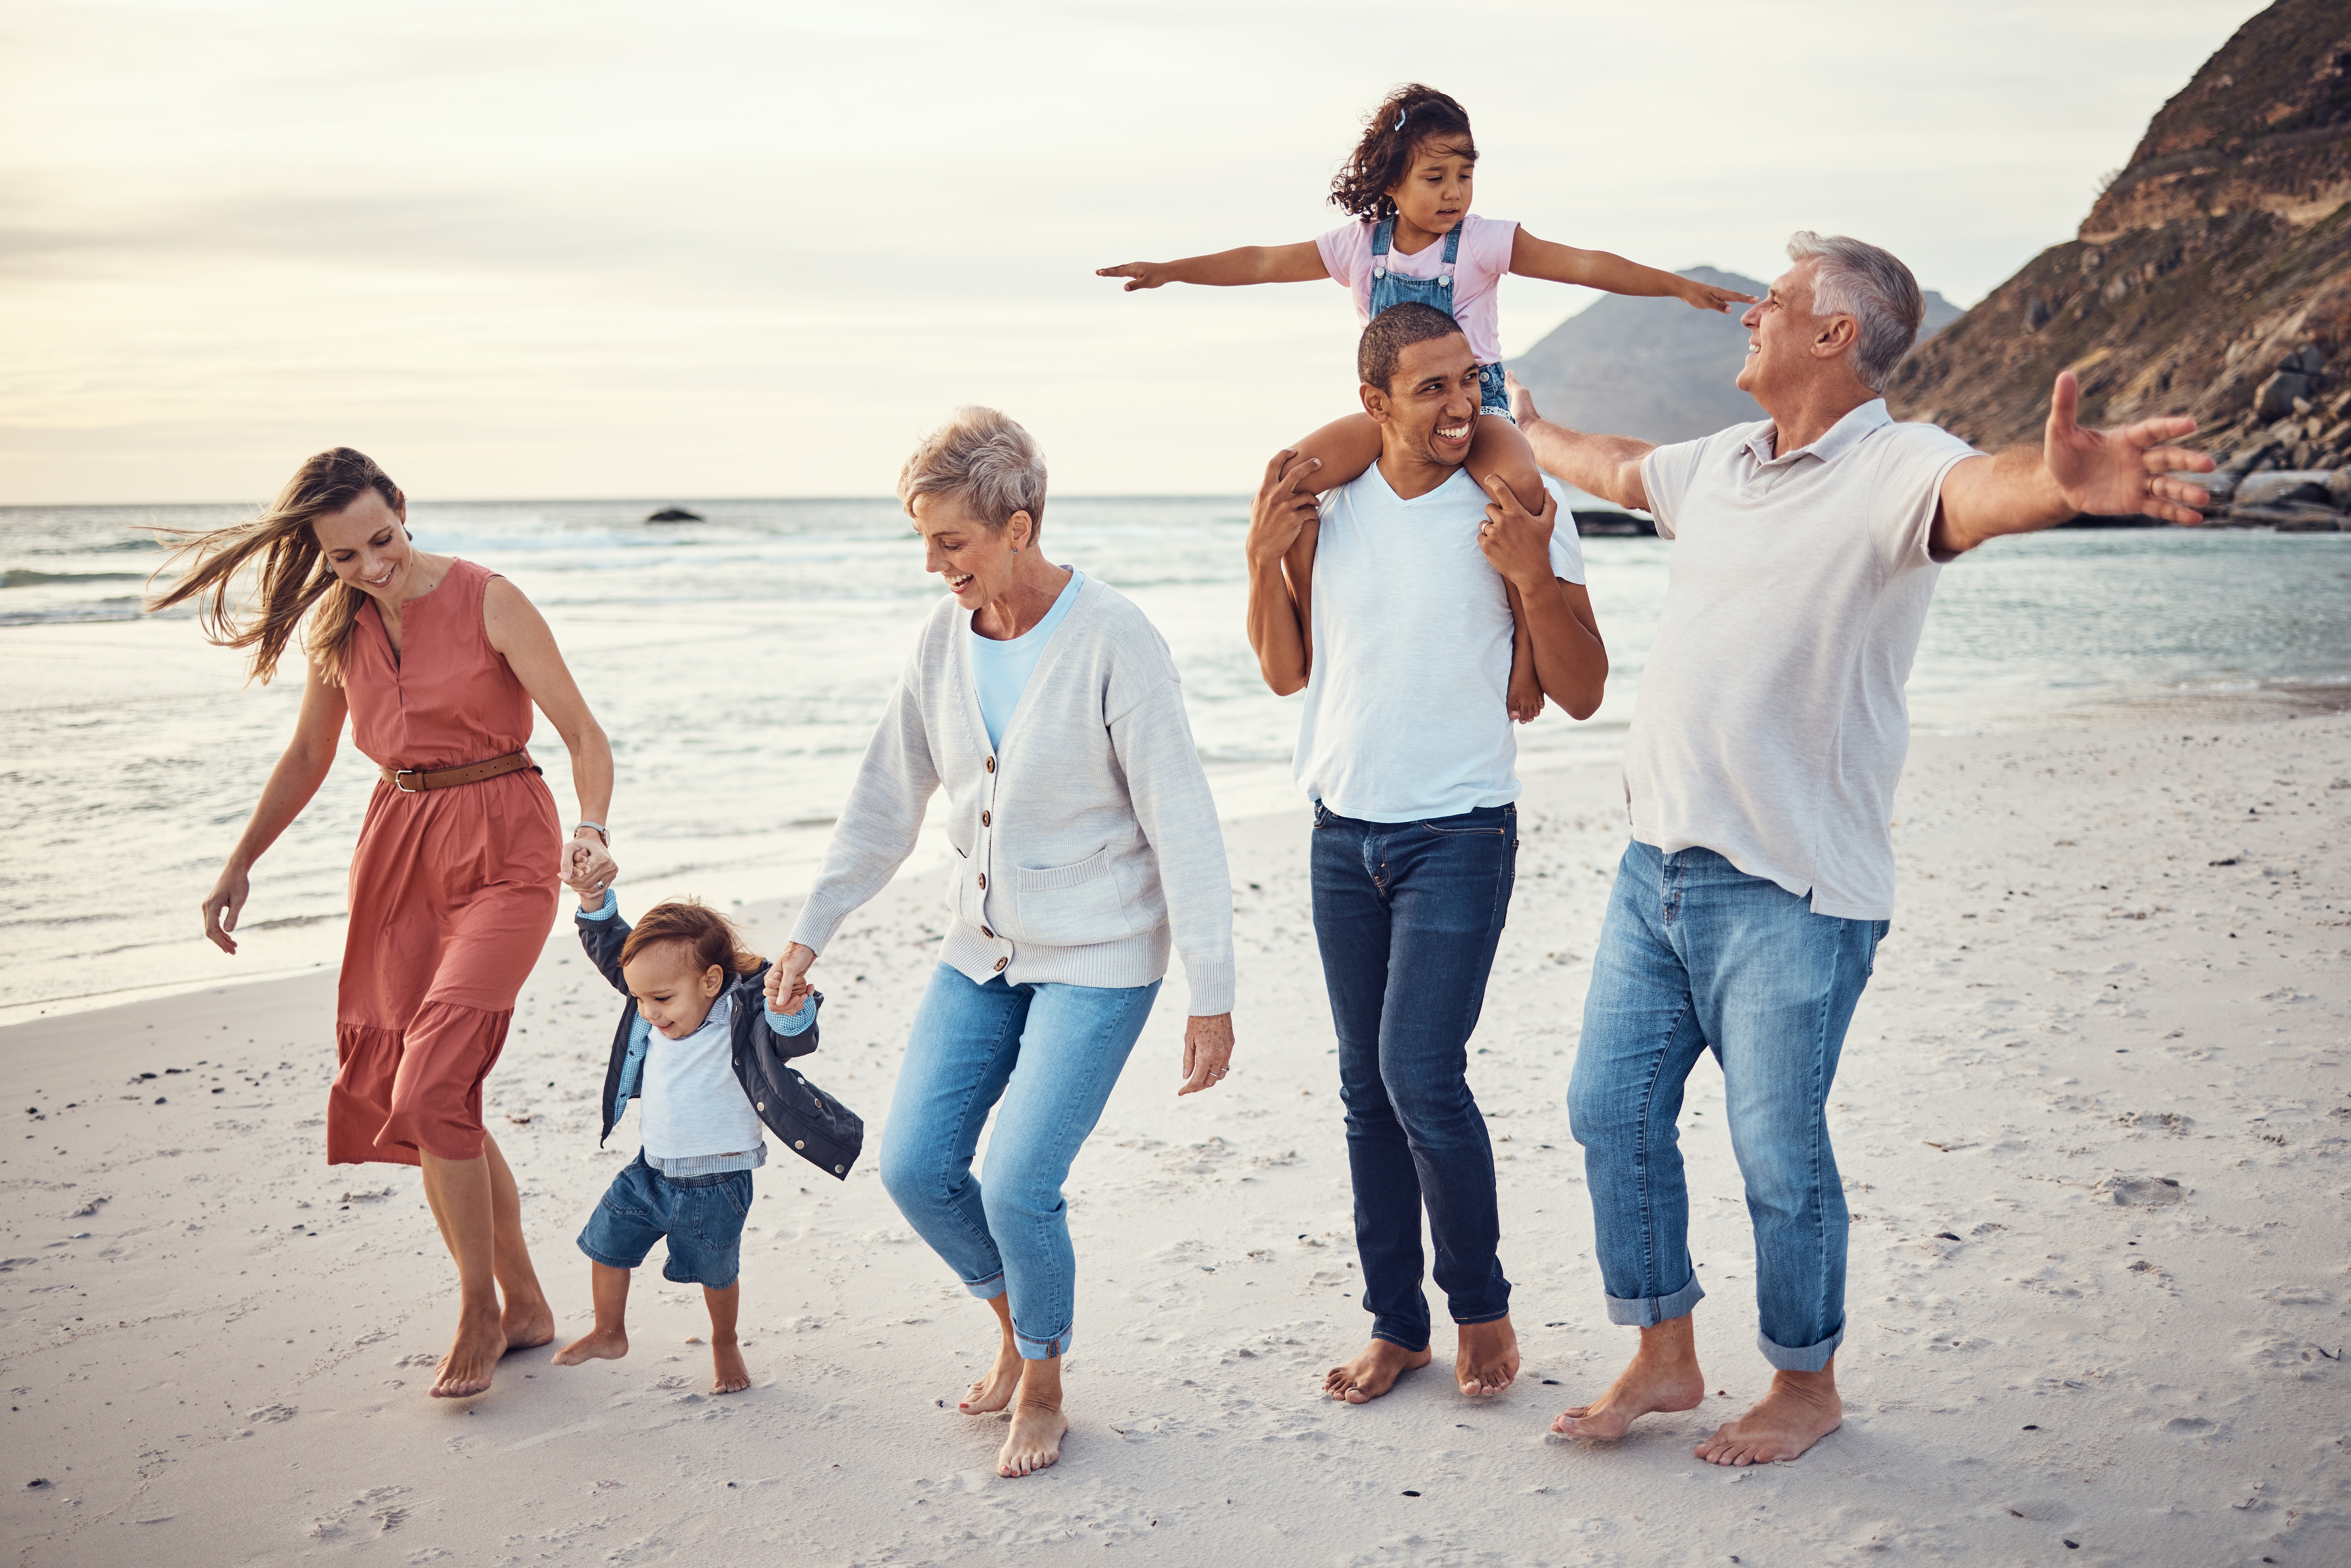 Famille sur la plage | Source : Shutterstock